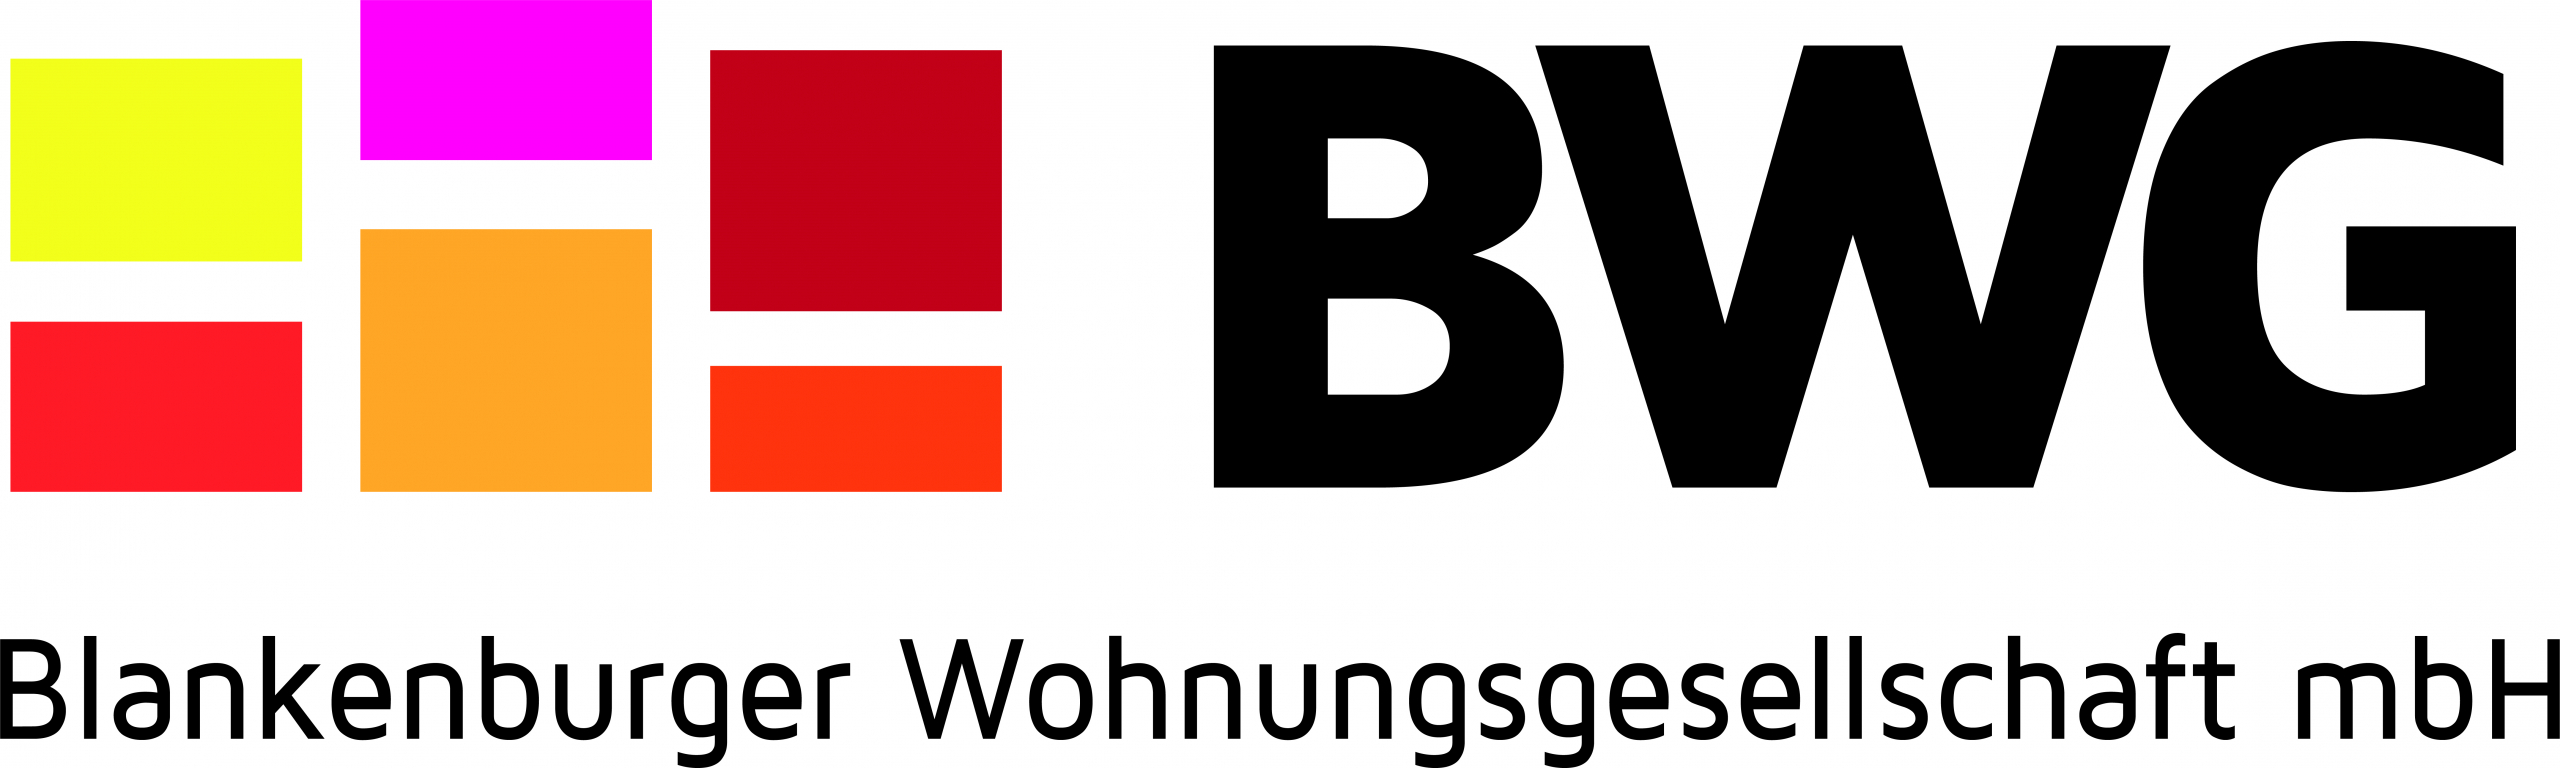 Blankenburger Wohnungsgesellschaft mbH Logo